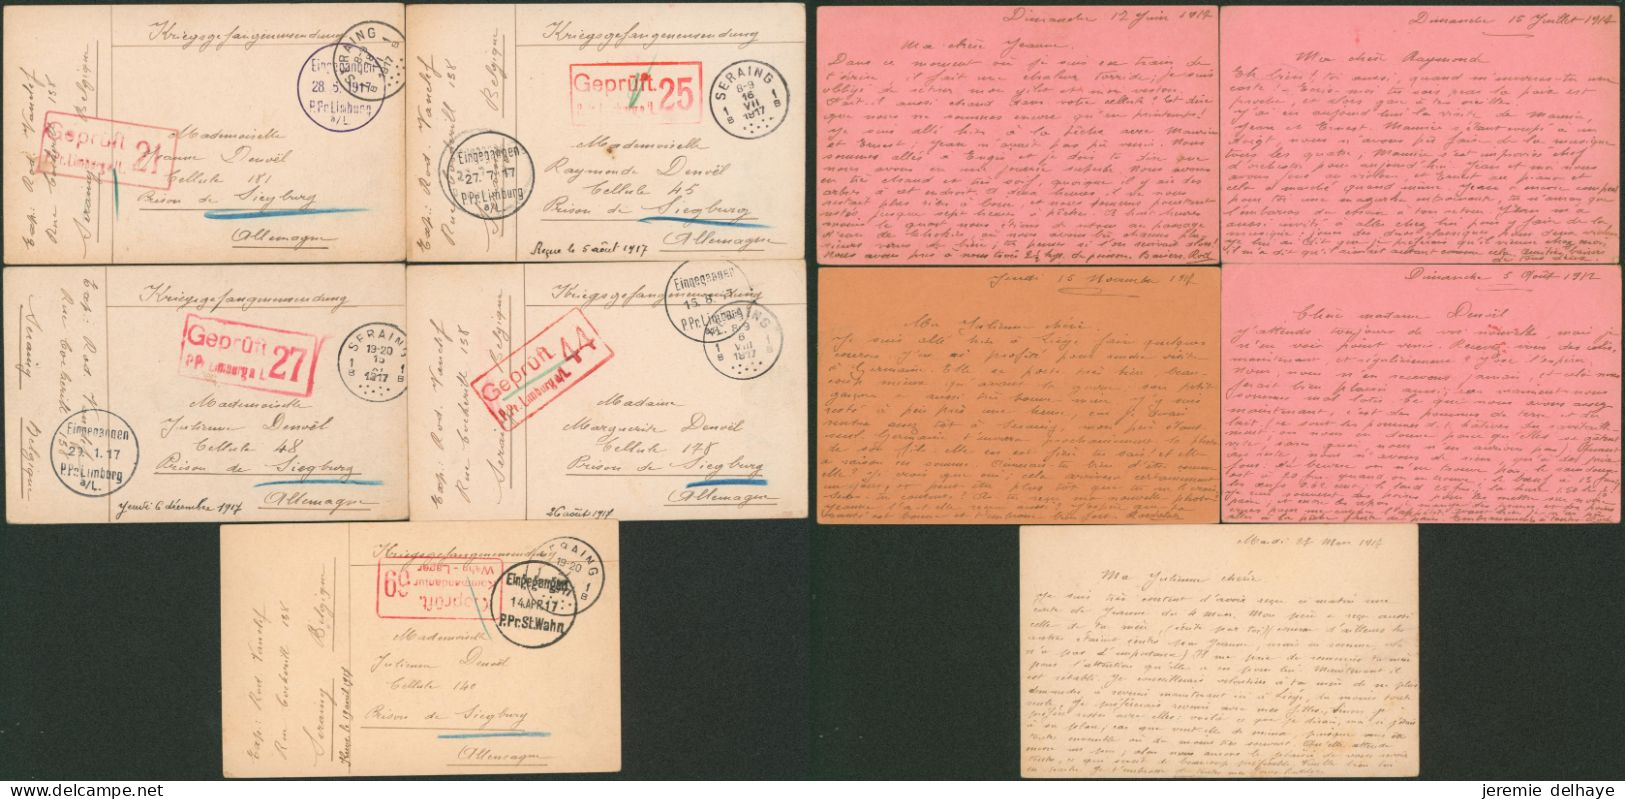 Guerre 14-18 - Archive De 5 Documents De Seraing (1917) > Prison De Siegburg + Censure Différente. - Prisonniers